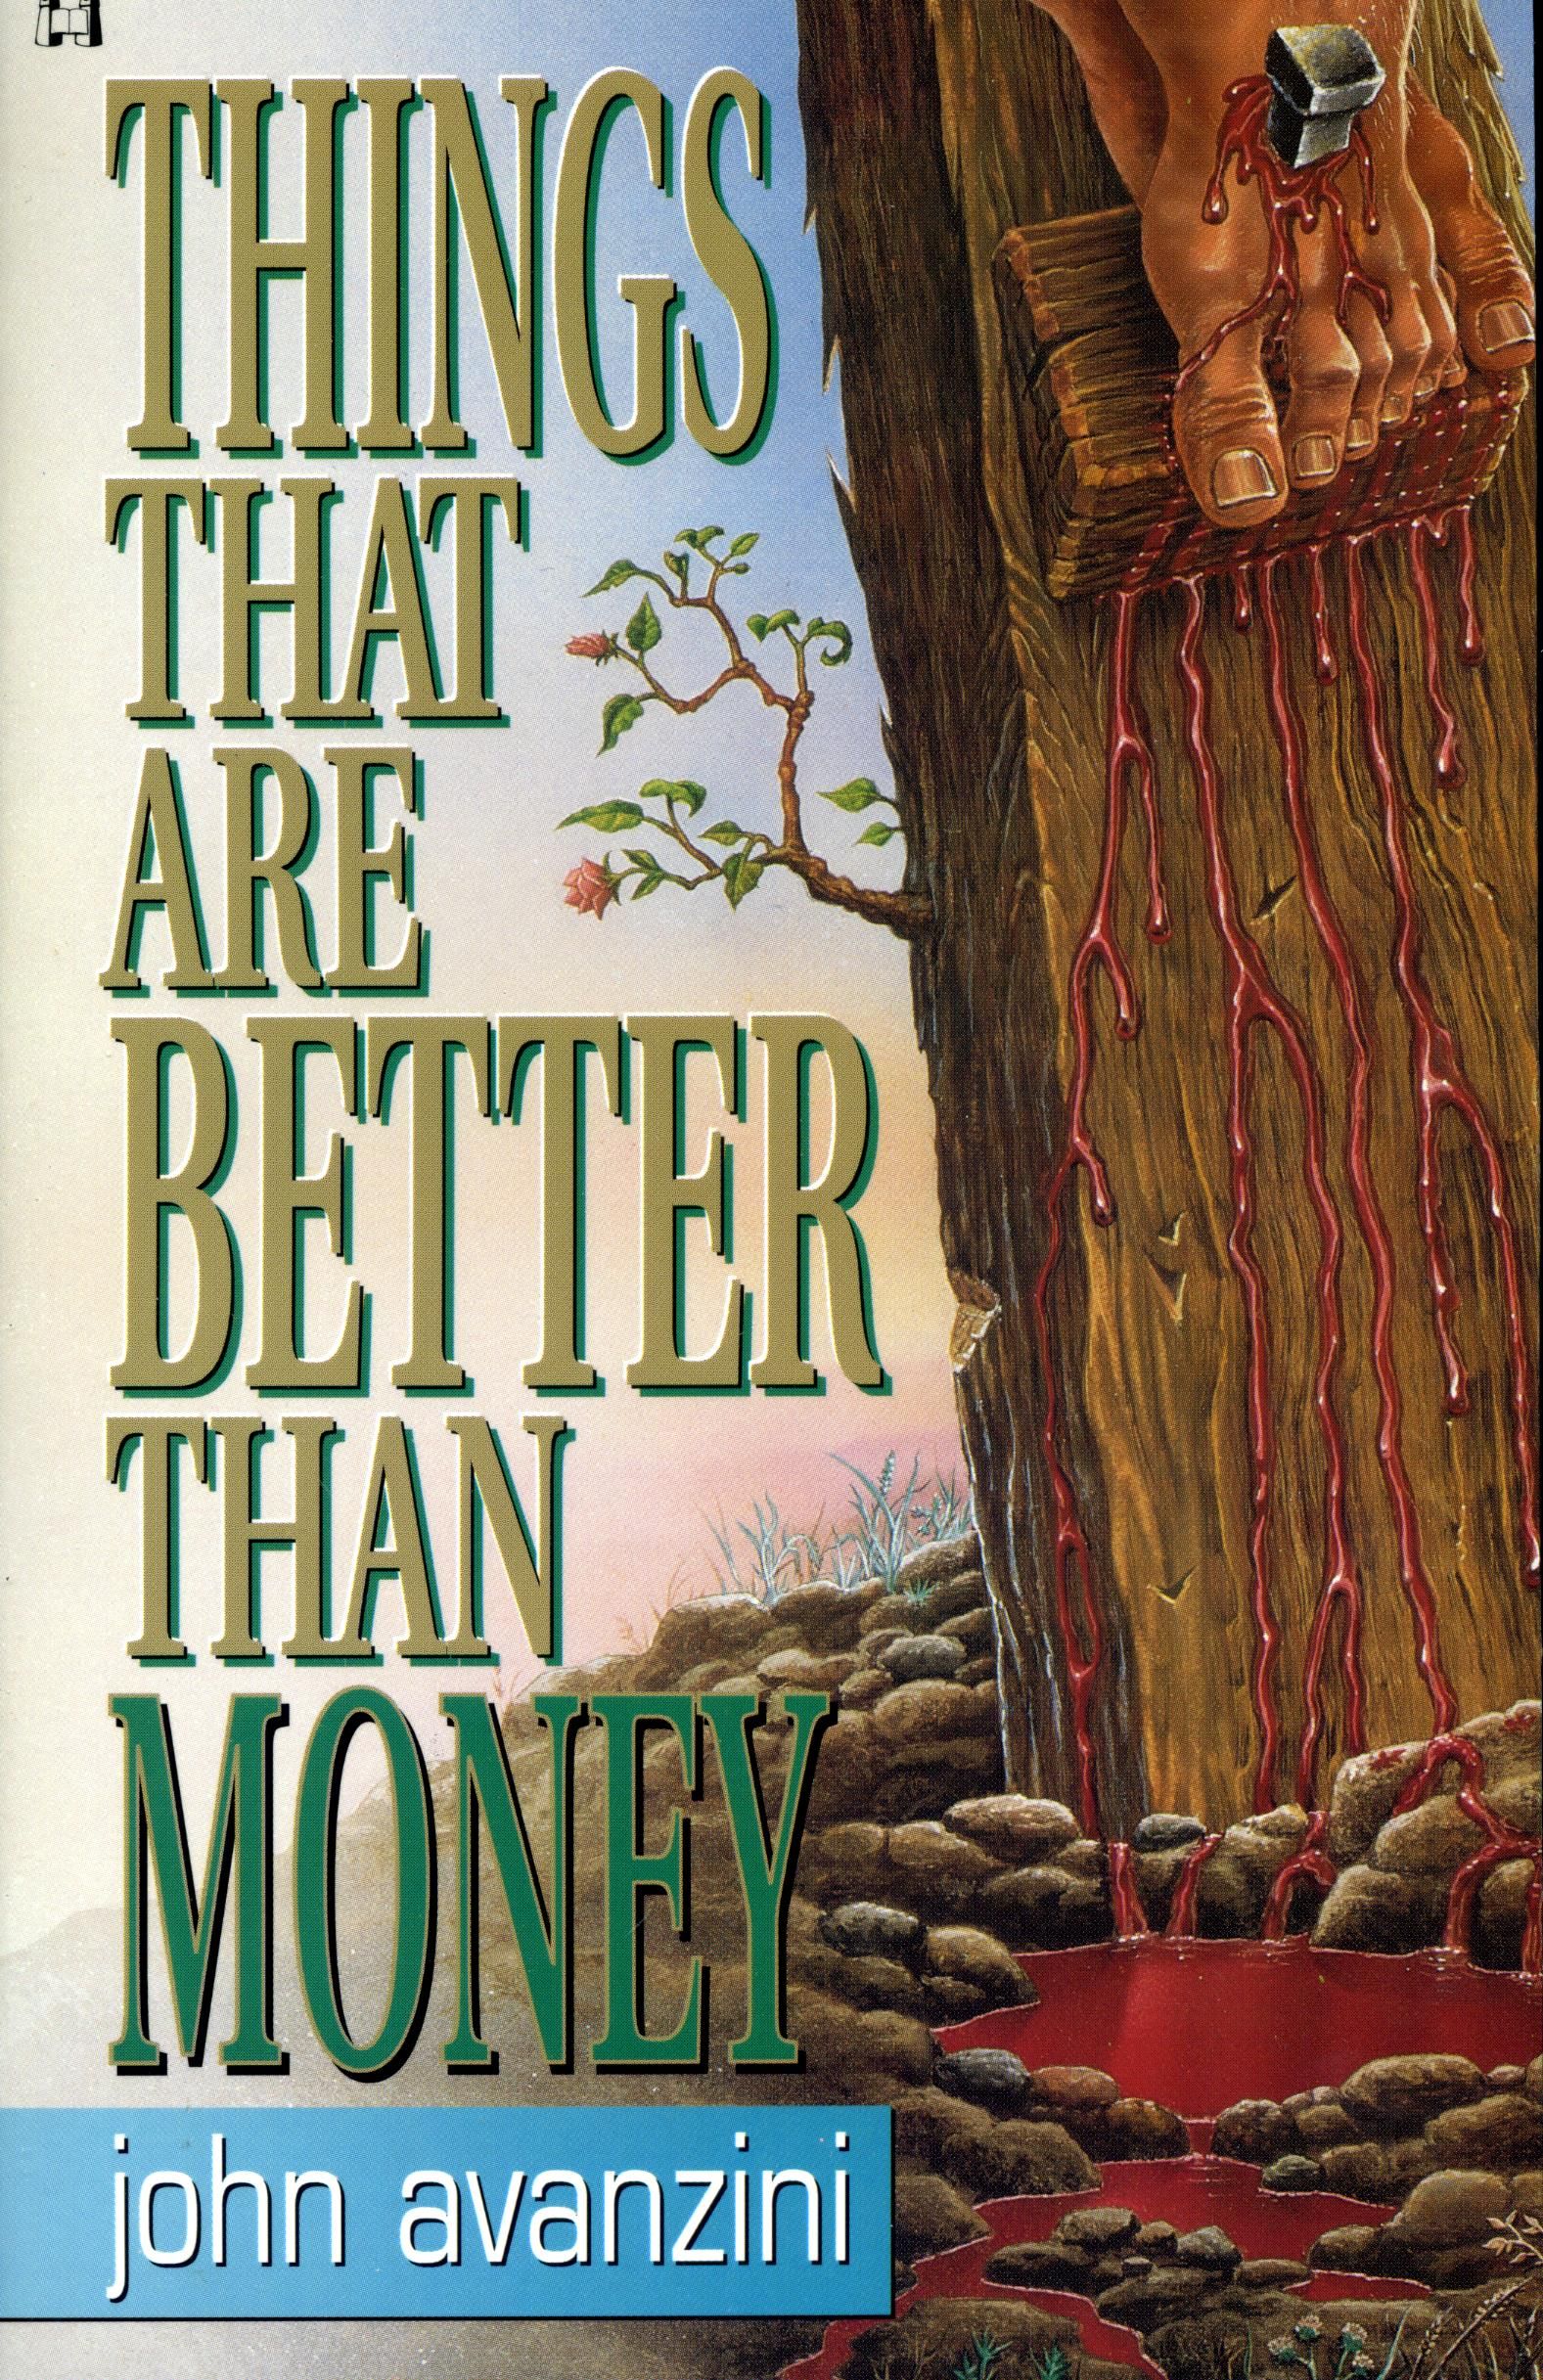 Englische Bücher - John Avanzini: Things Better than Money